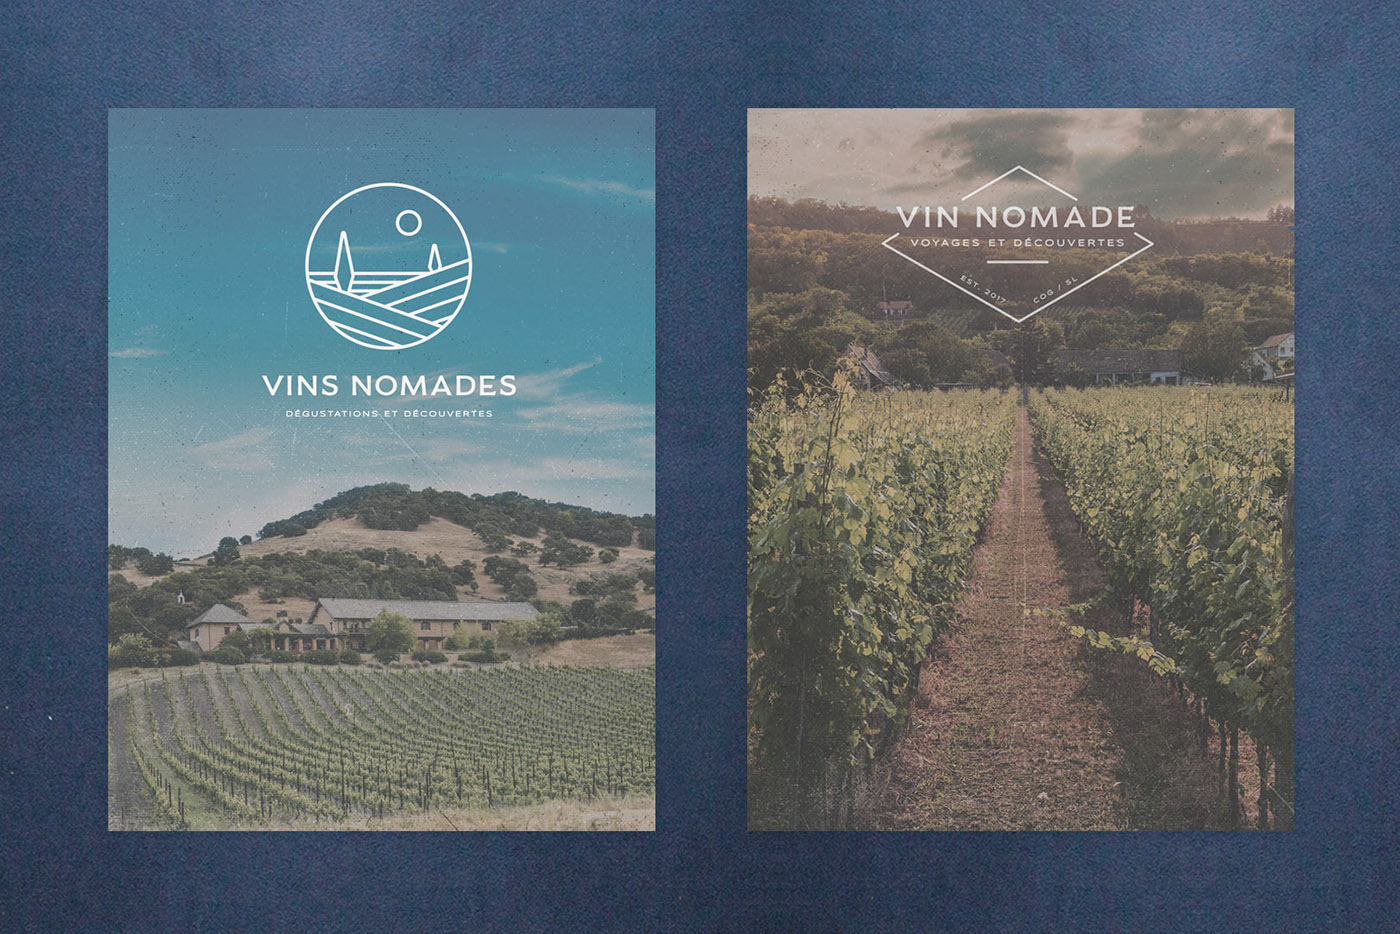 wine import agency wine vins nomades business card logo Brand Design stamp brand craft